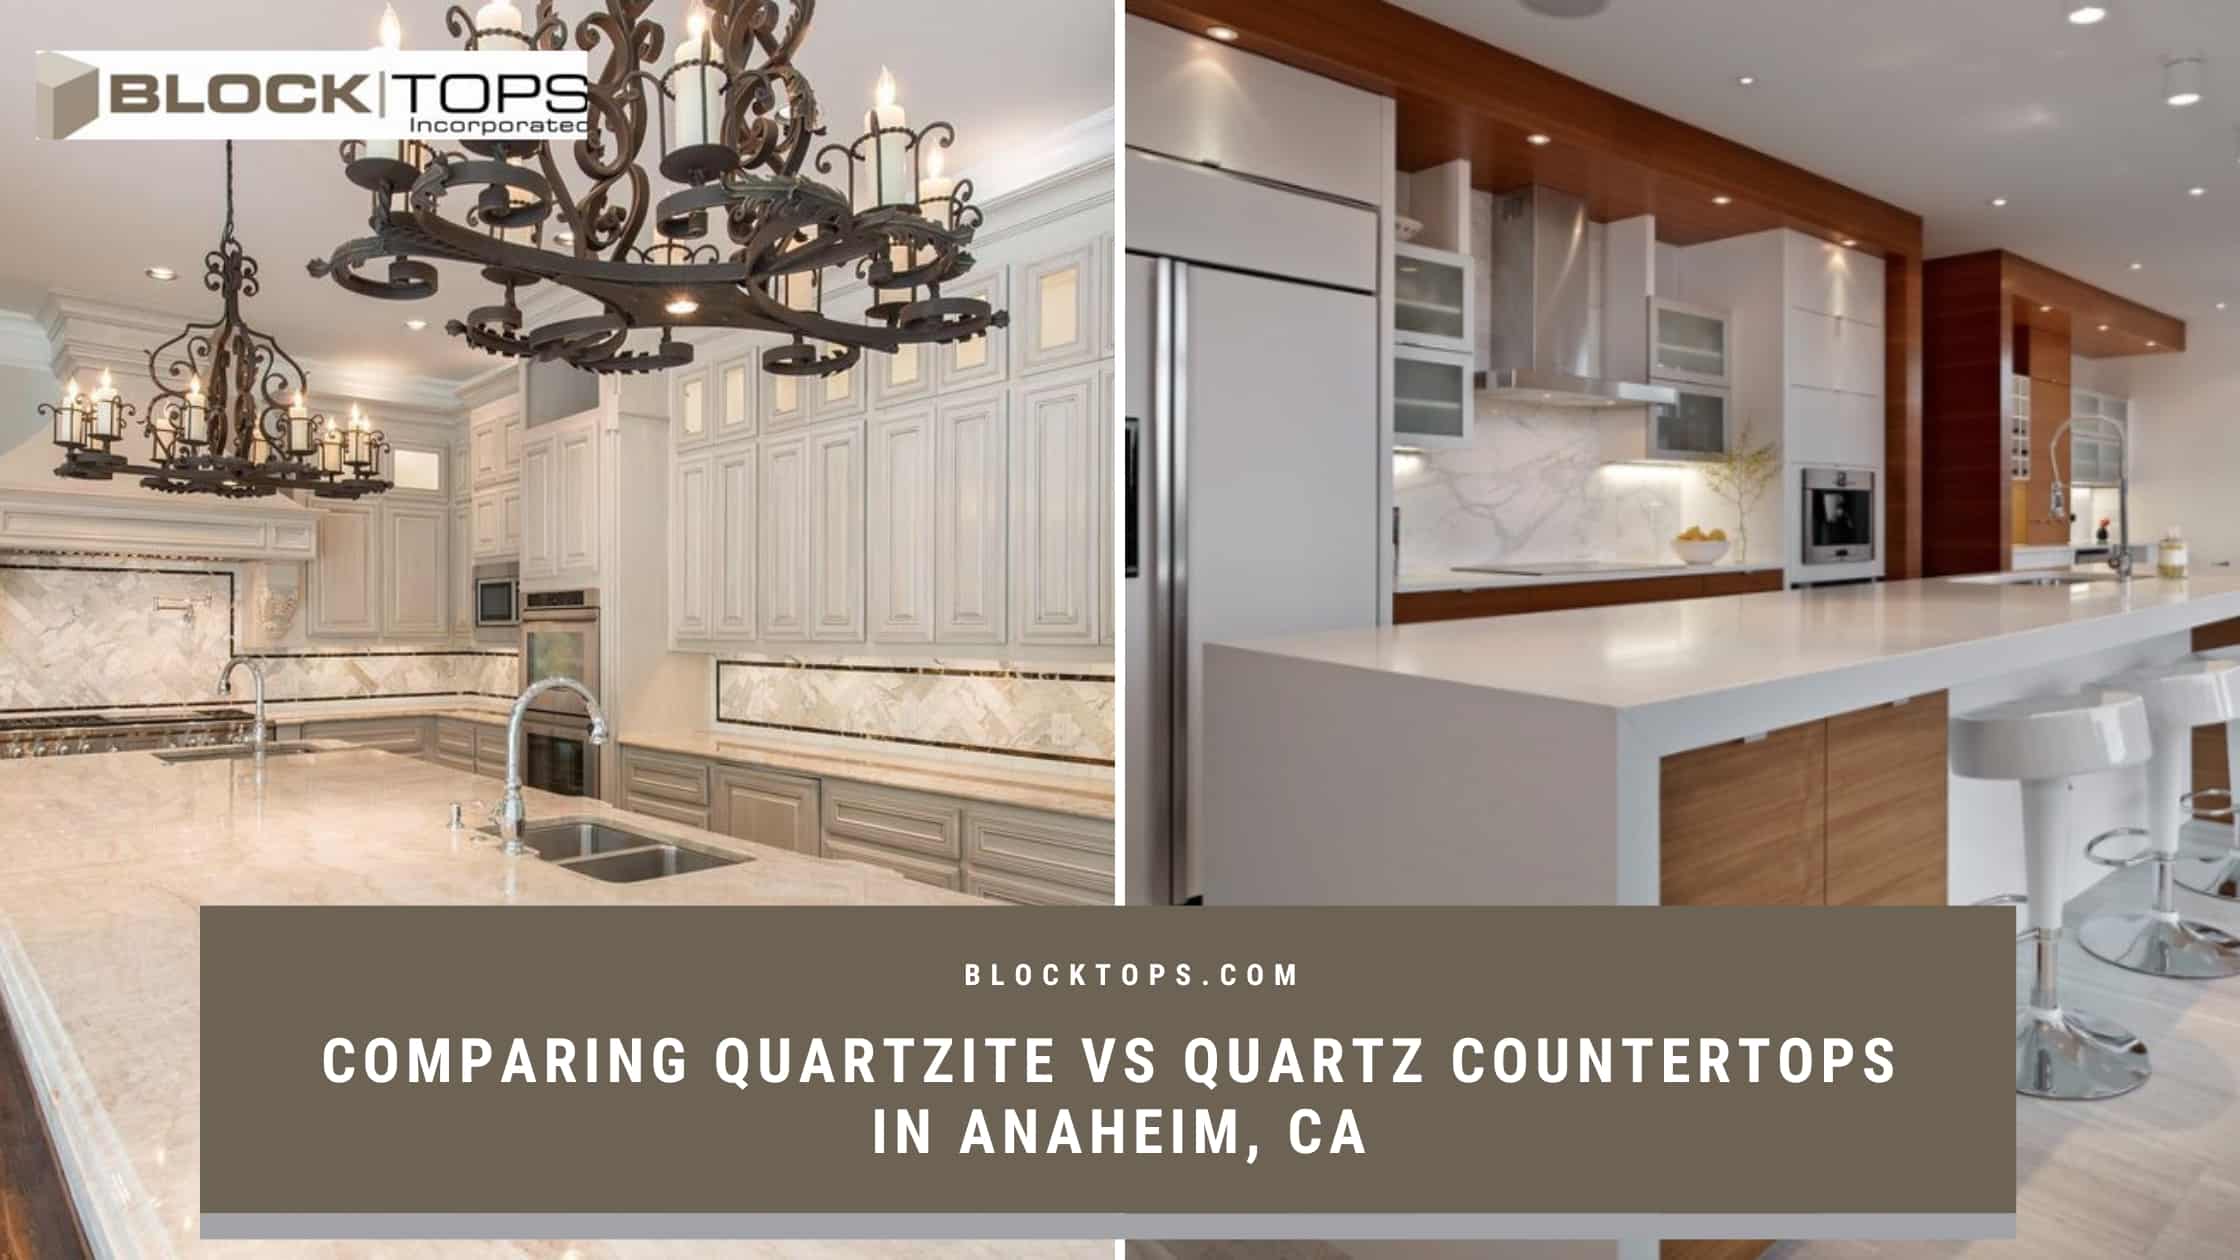 Comparing Quartzite vs Quartz Countertops in Anaheim, CA